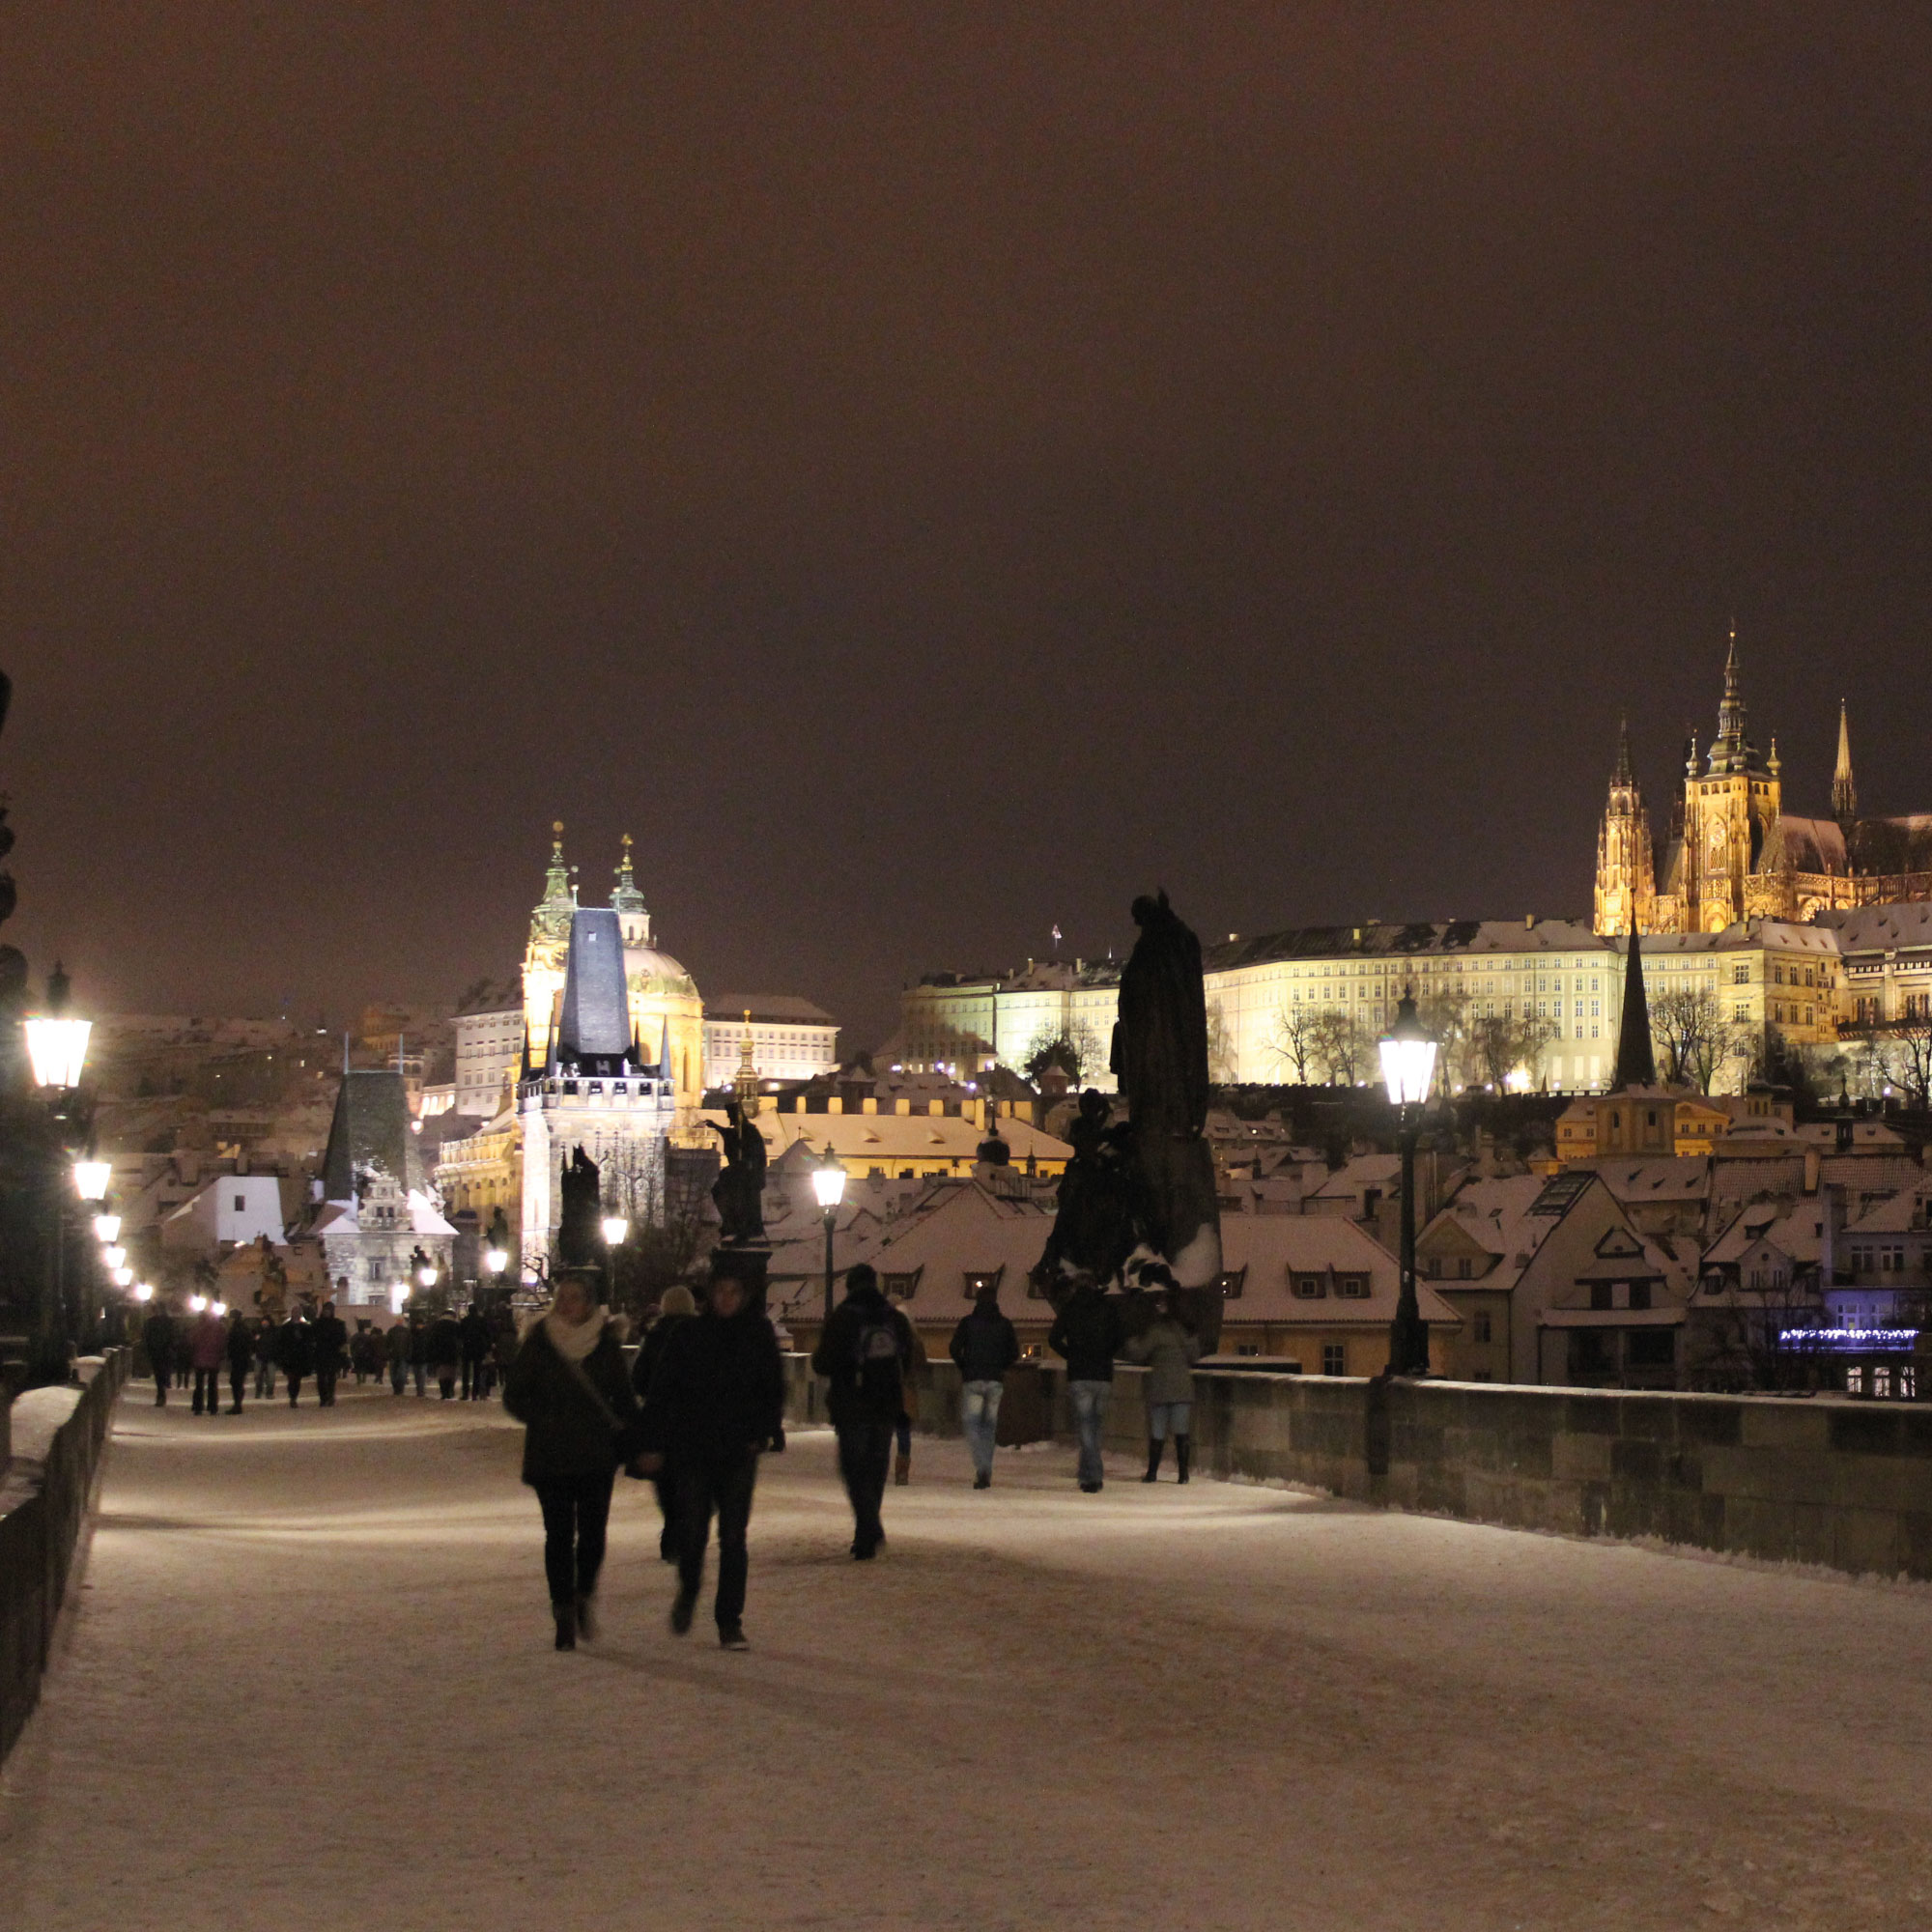 Prag im Winter, Tipps und Sehenswürdigkeiten